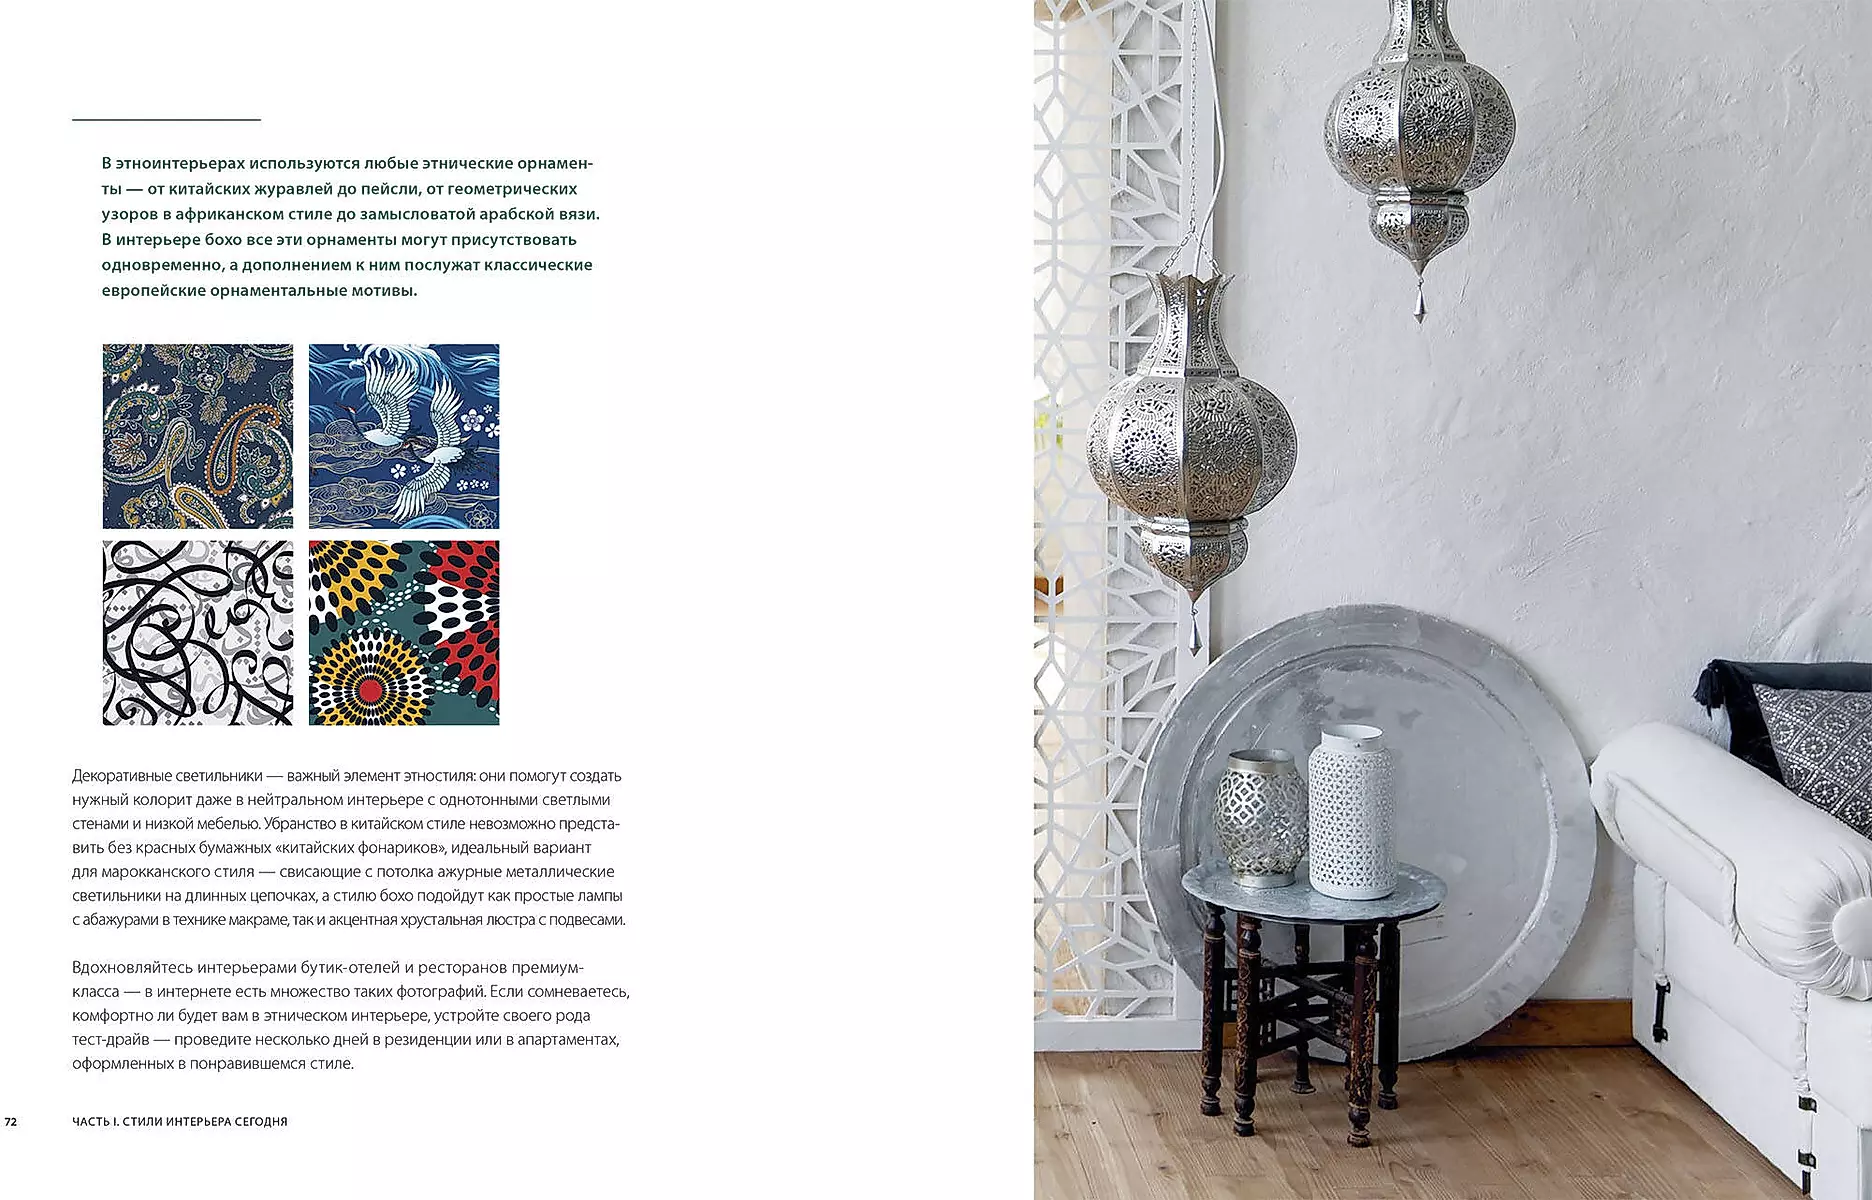 Interior and Decor - Дизайн интерьера. Декор | ВКонтакте